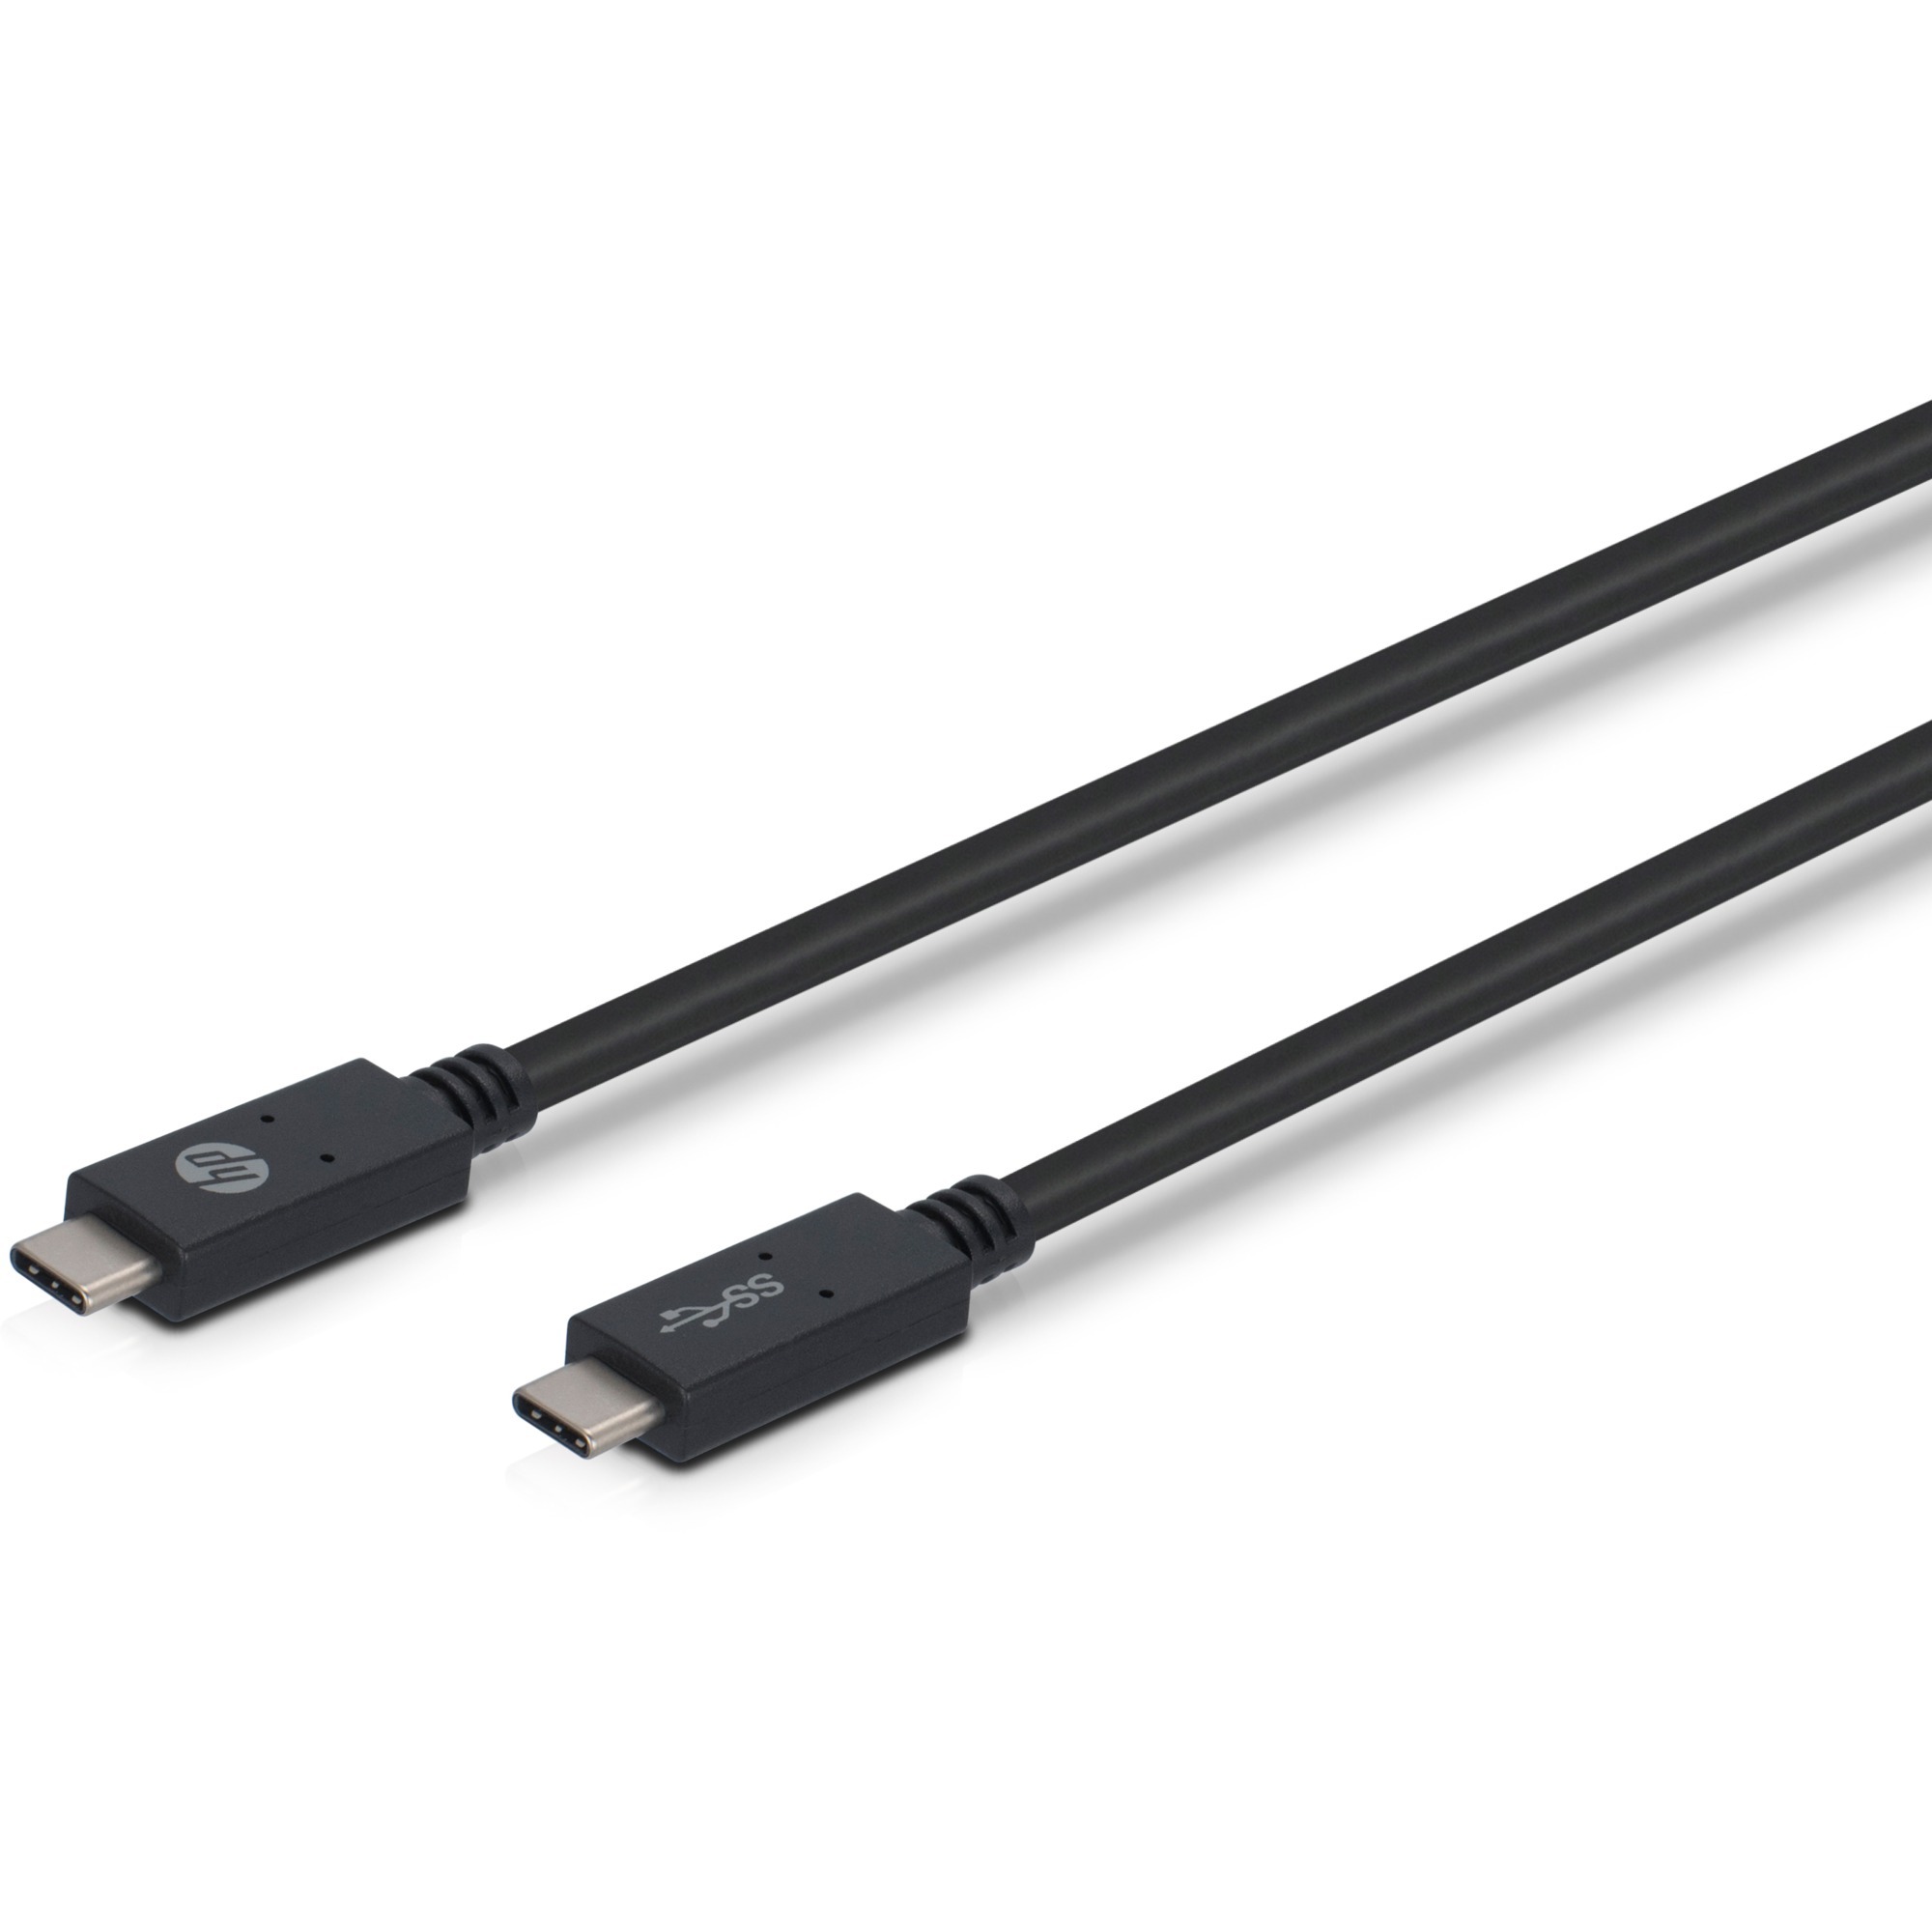 Image of Alternate - Kabel USB C (Stecker) > USB C (Stecker) online einkaufen bei Alternate